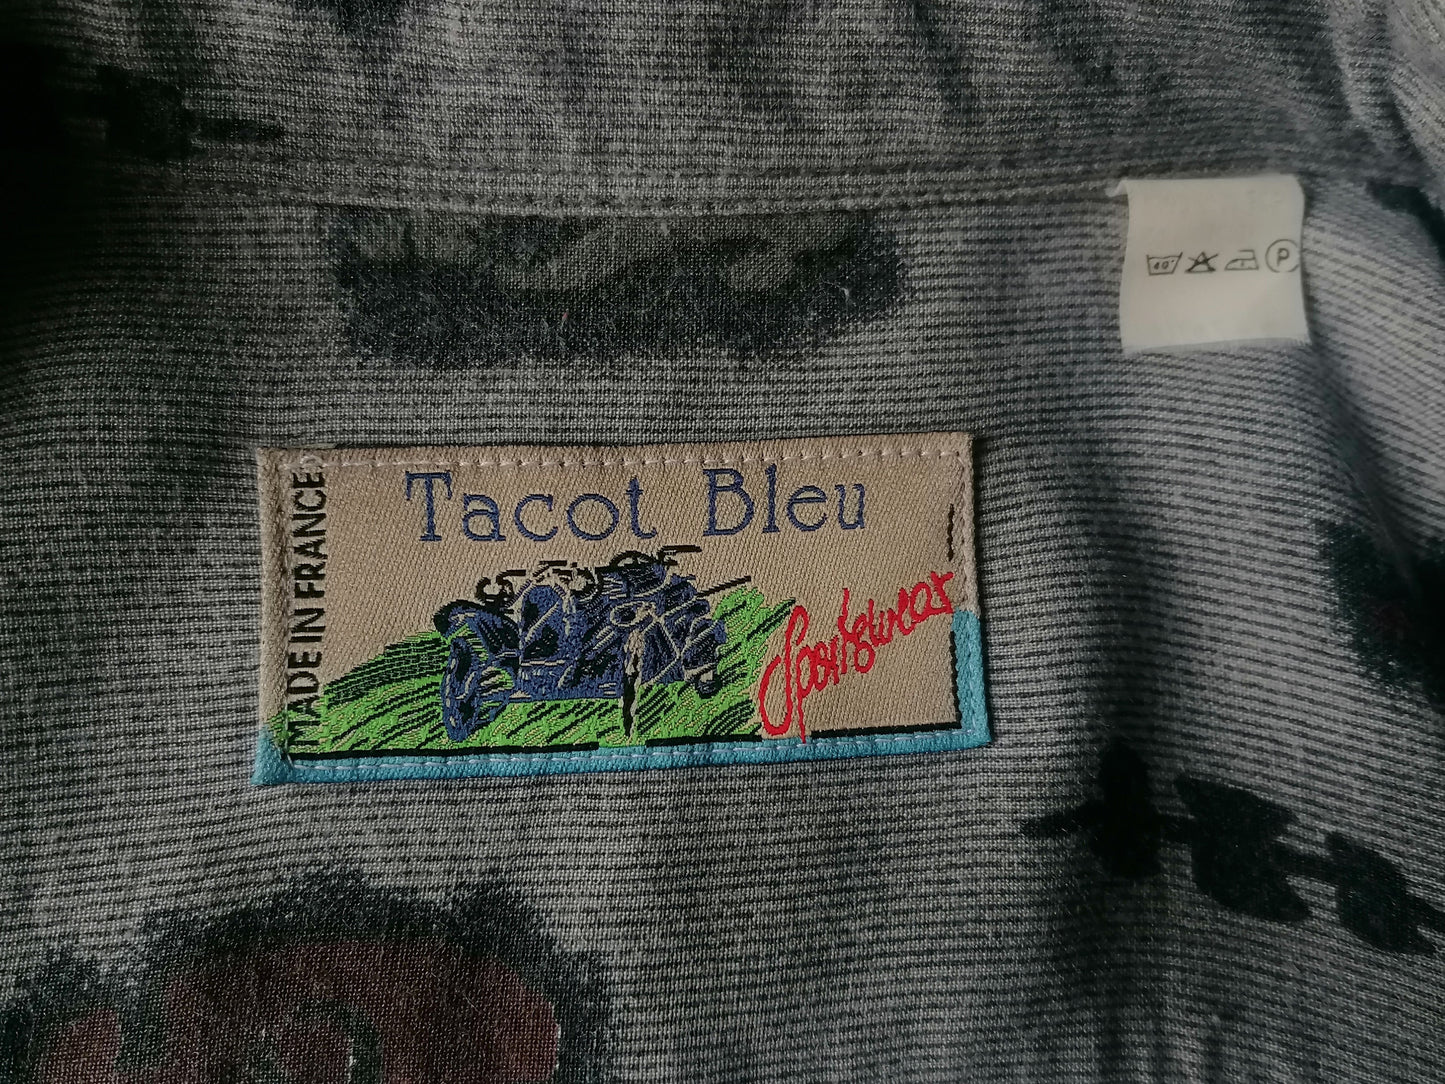 Vintage Tacot Bleu overhemd. Grijs Bruin Rode print. Maat XL. 100% Viscose.